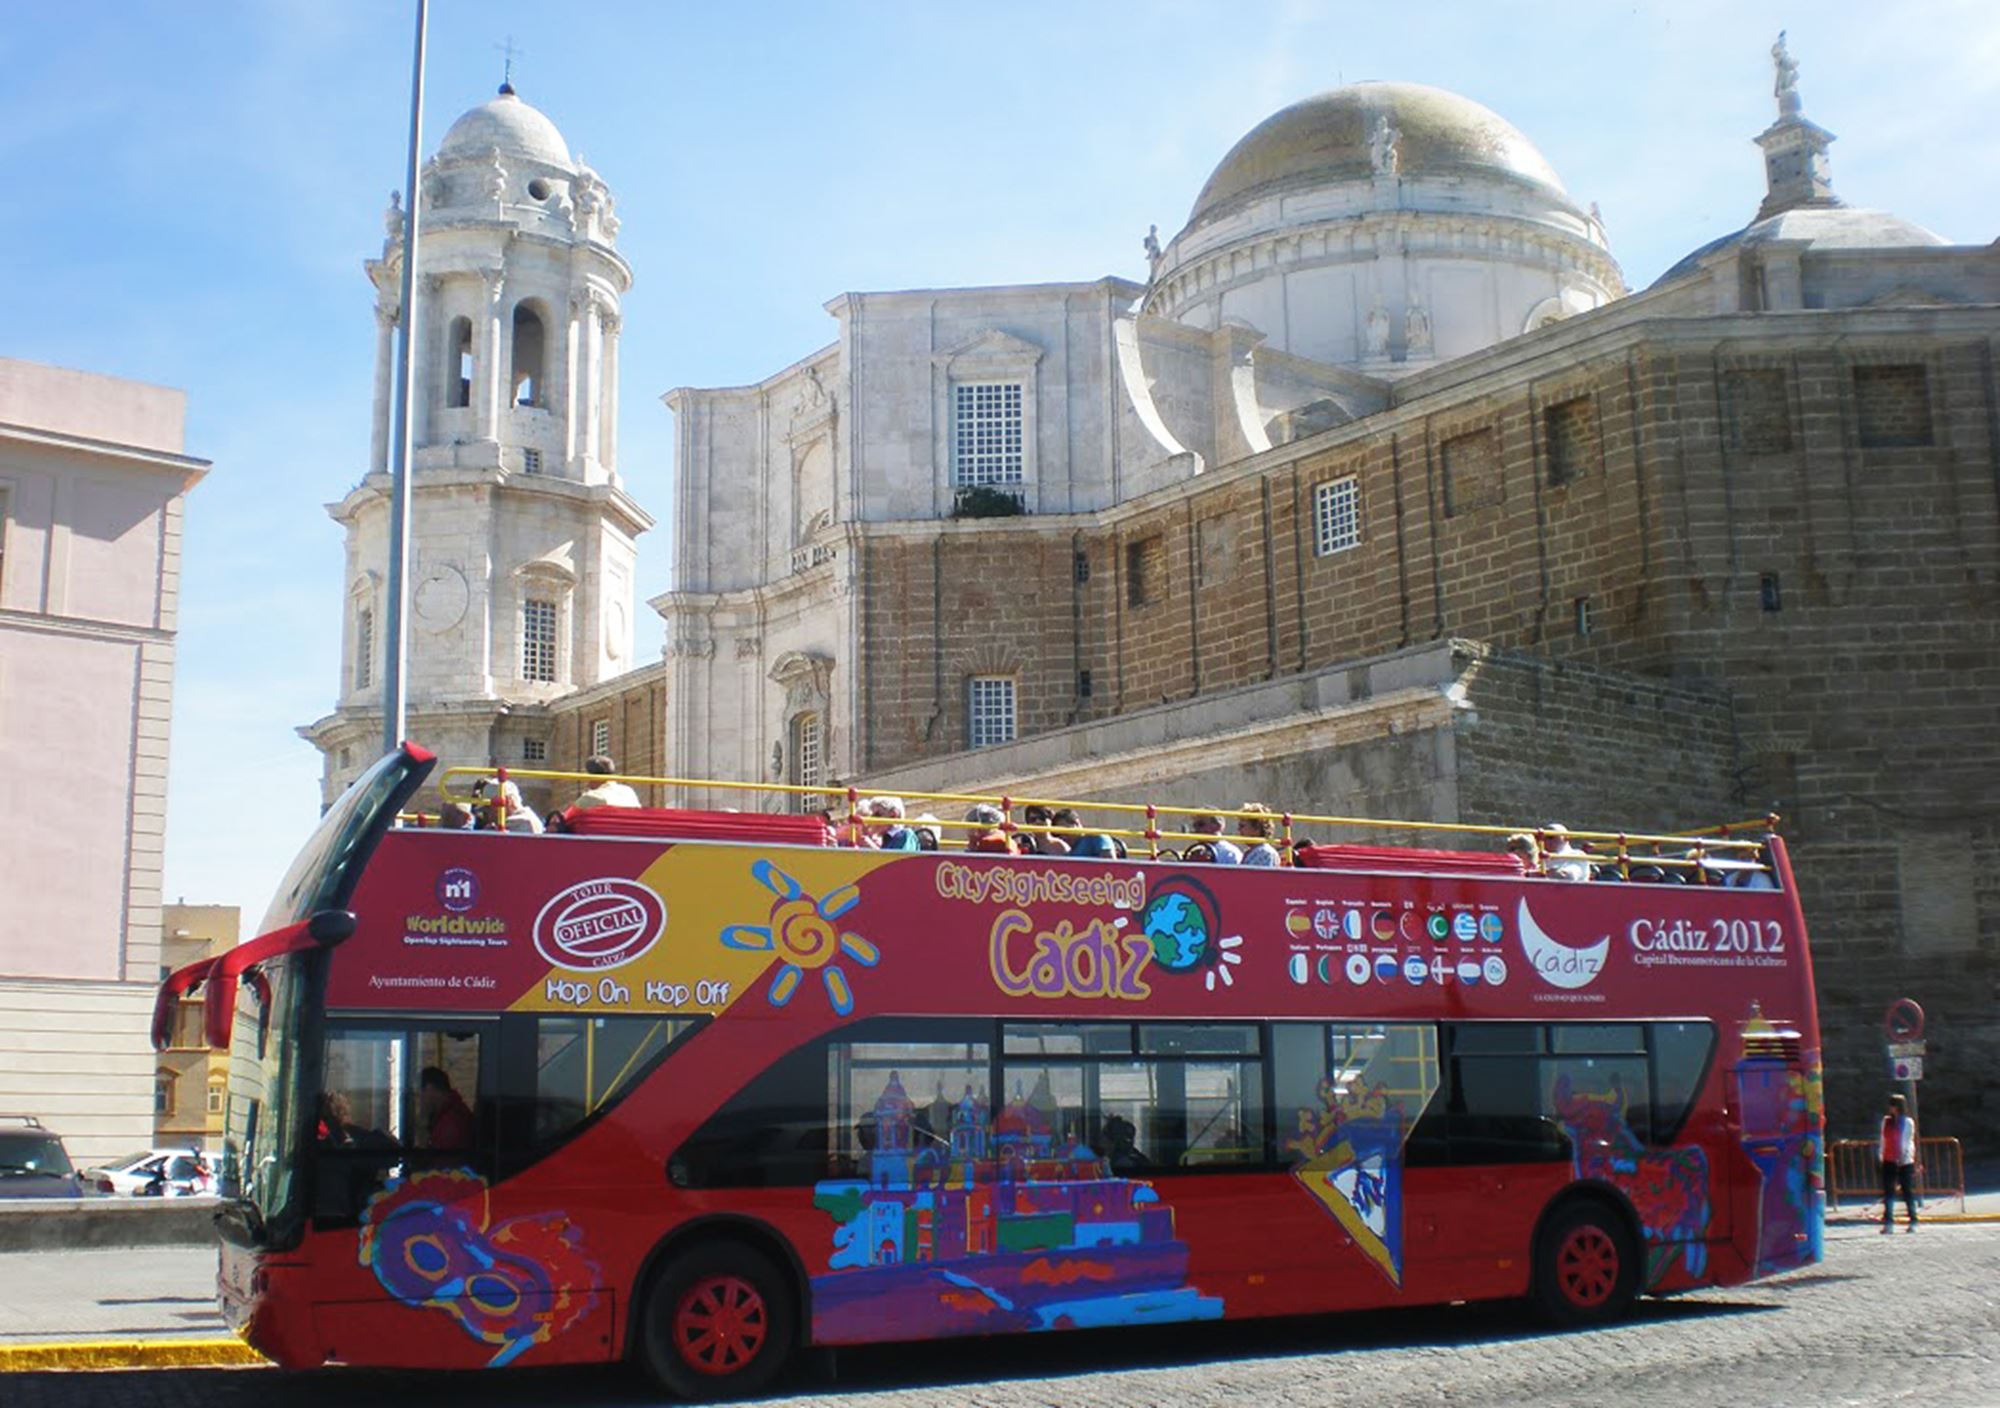 réservations visites guidées Bus Touristique City Sightseeing Cadix billets visiter